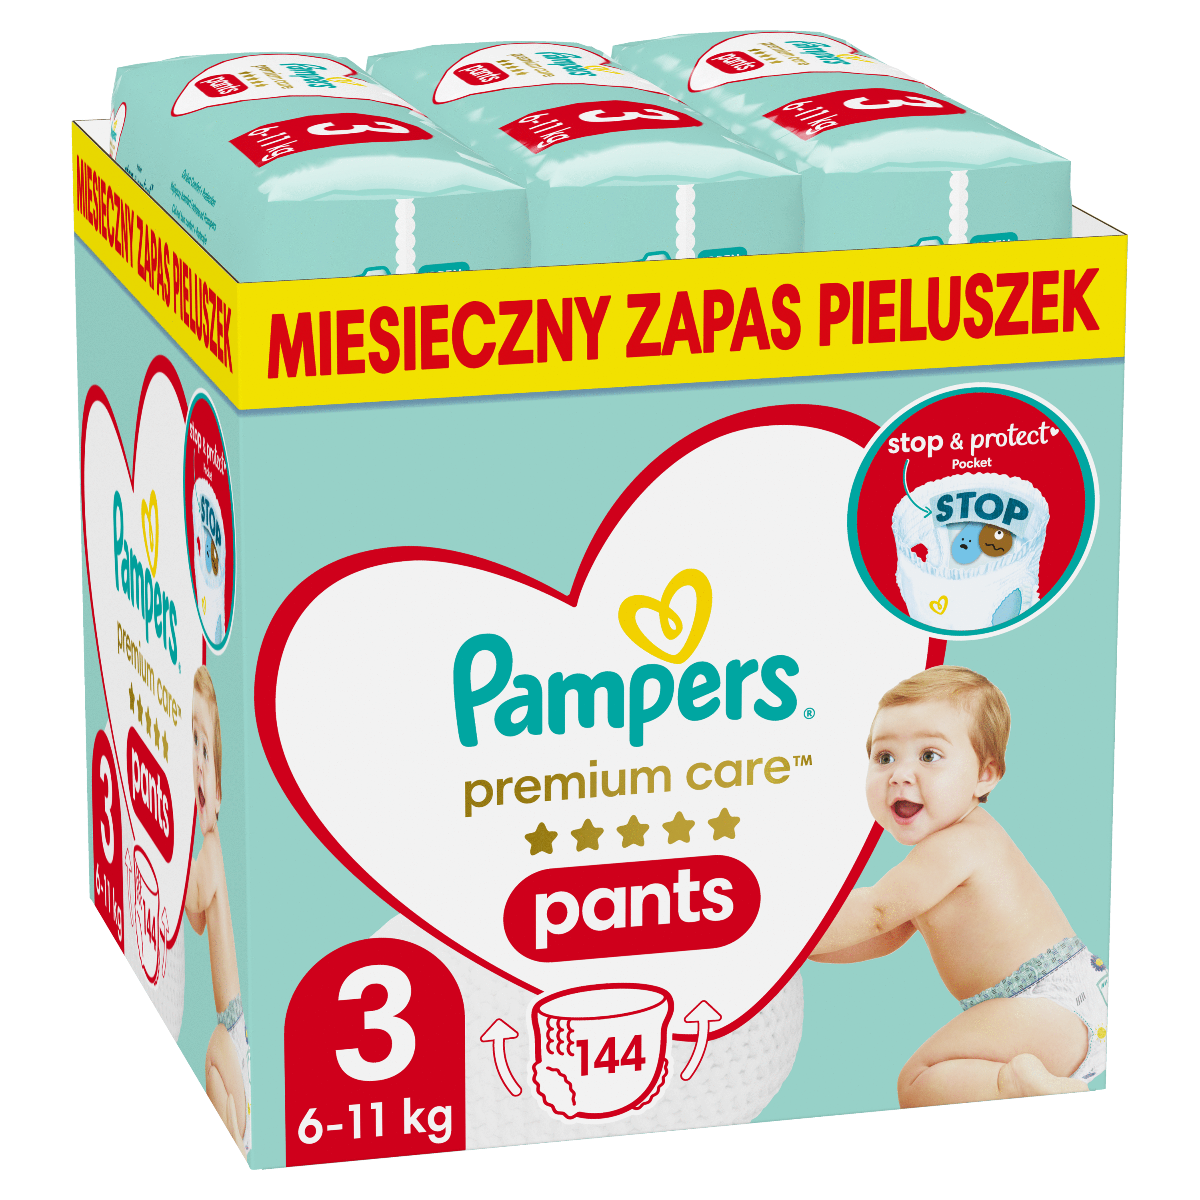 pampers premium care site aptekagemini.pl